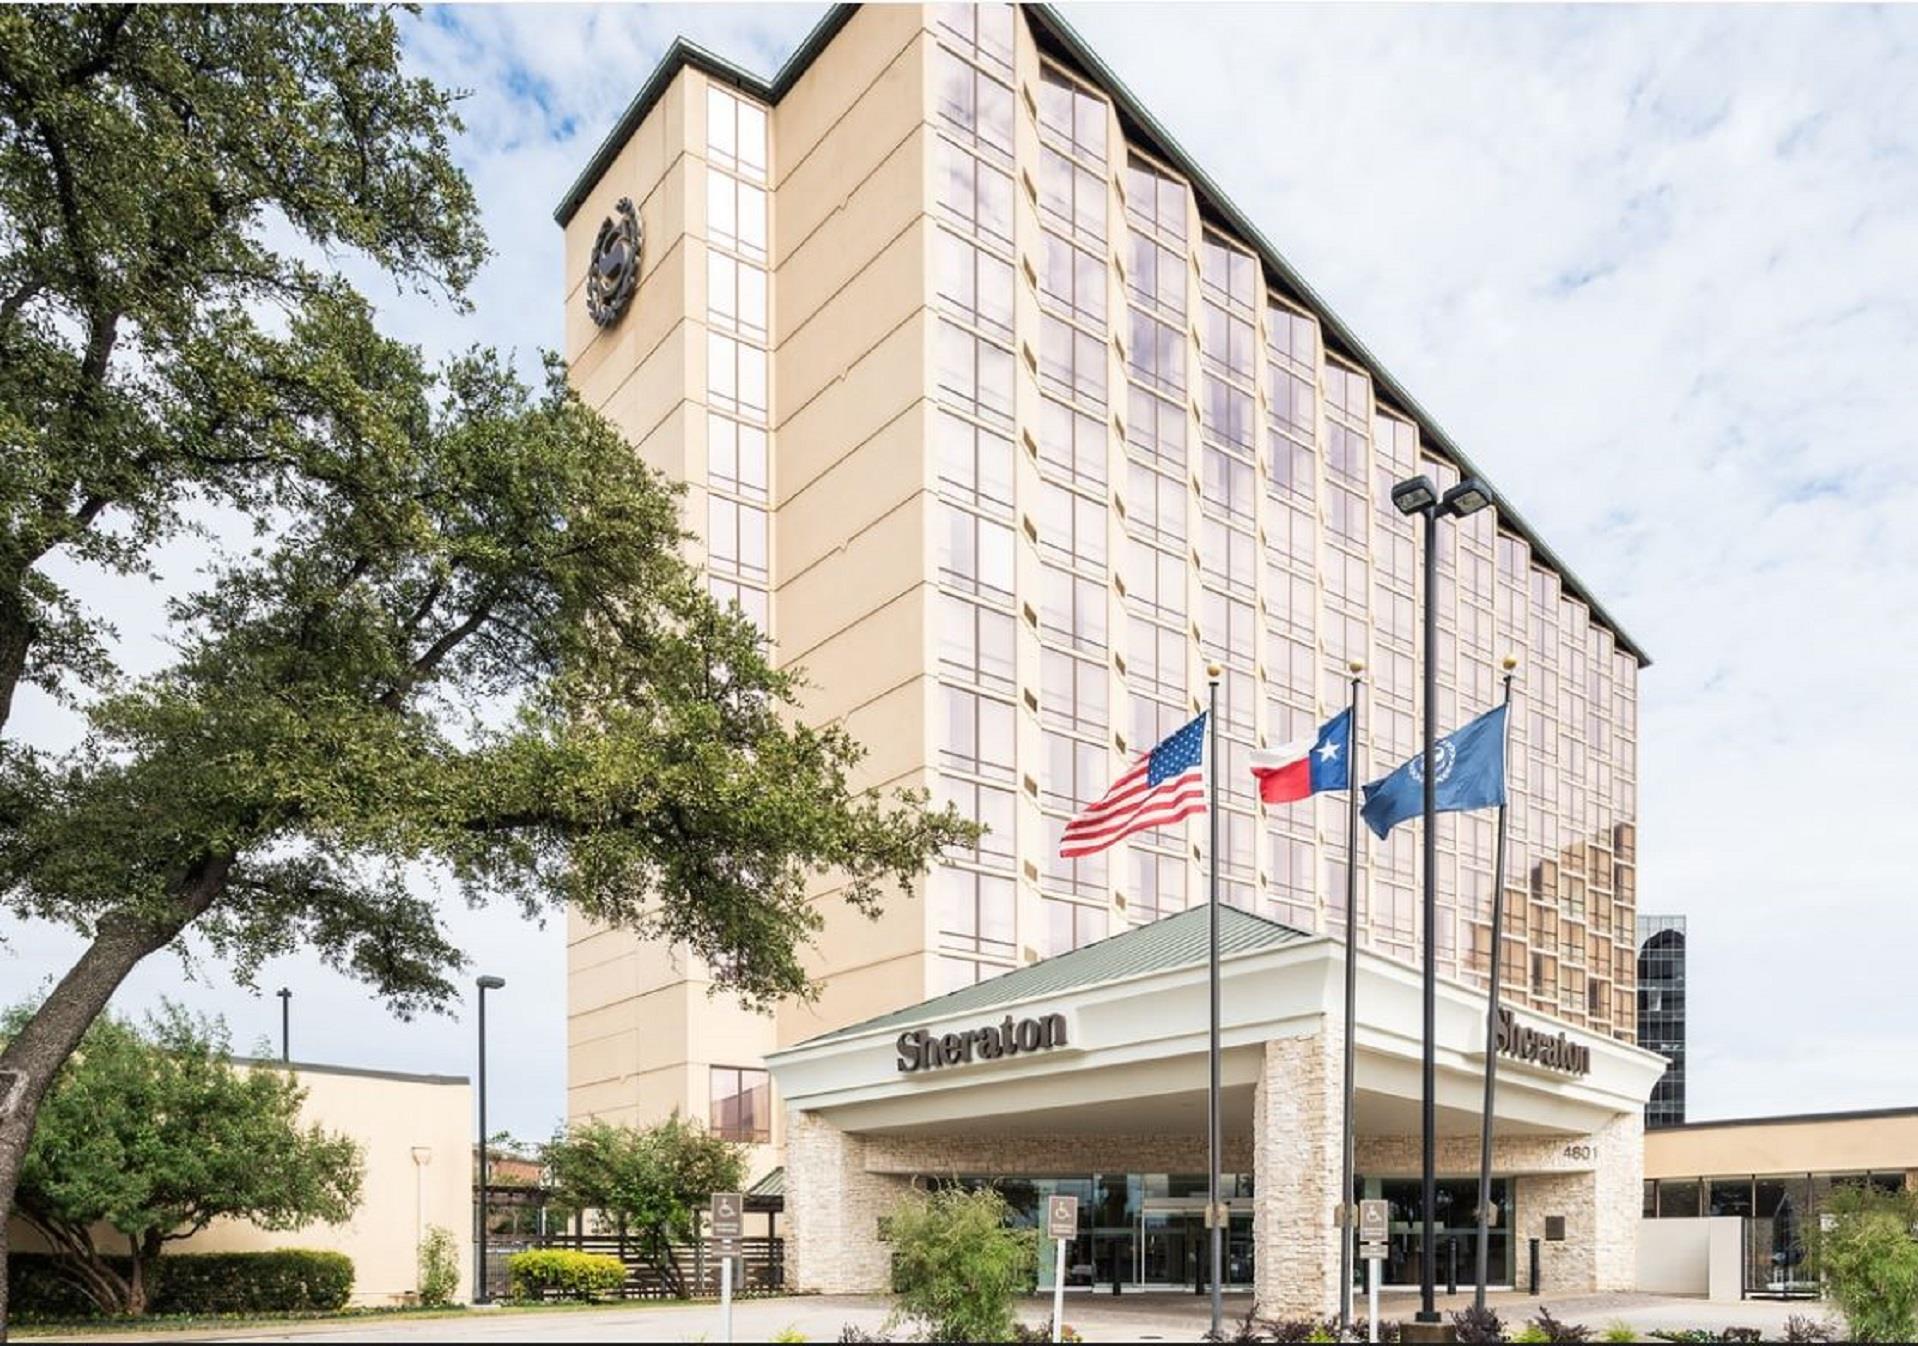 Sheraton Dallas Hotel by the Galleria in Dallas, TX